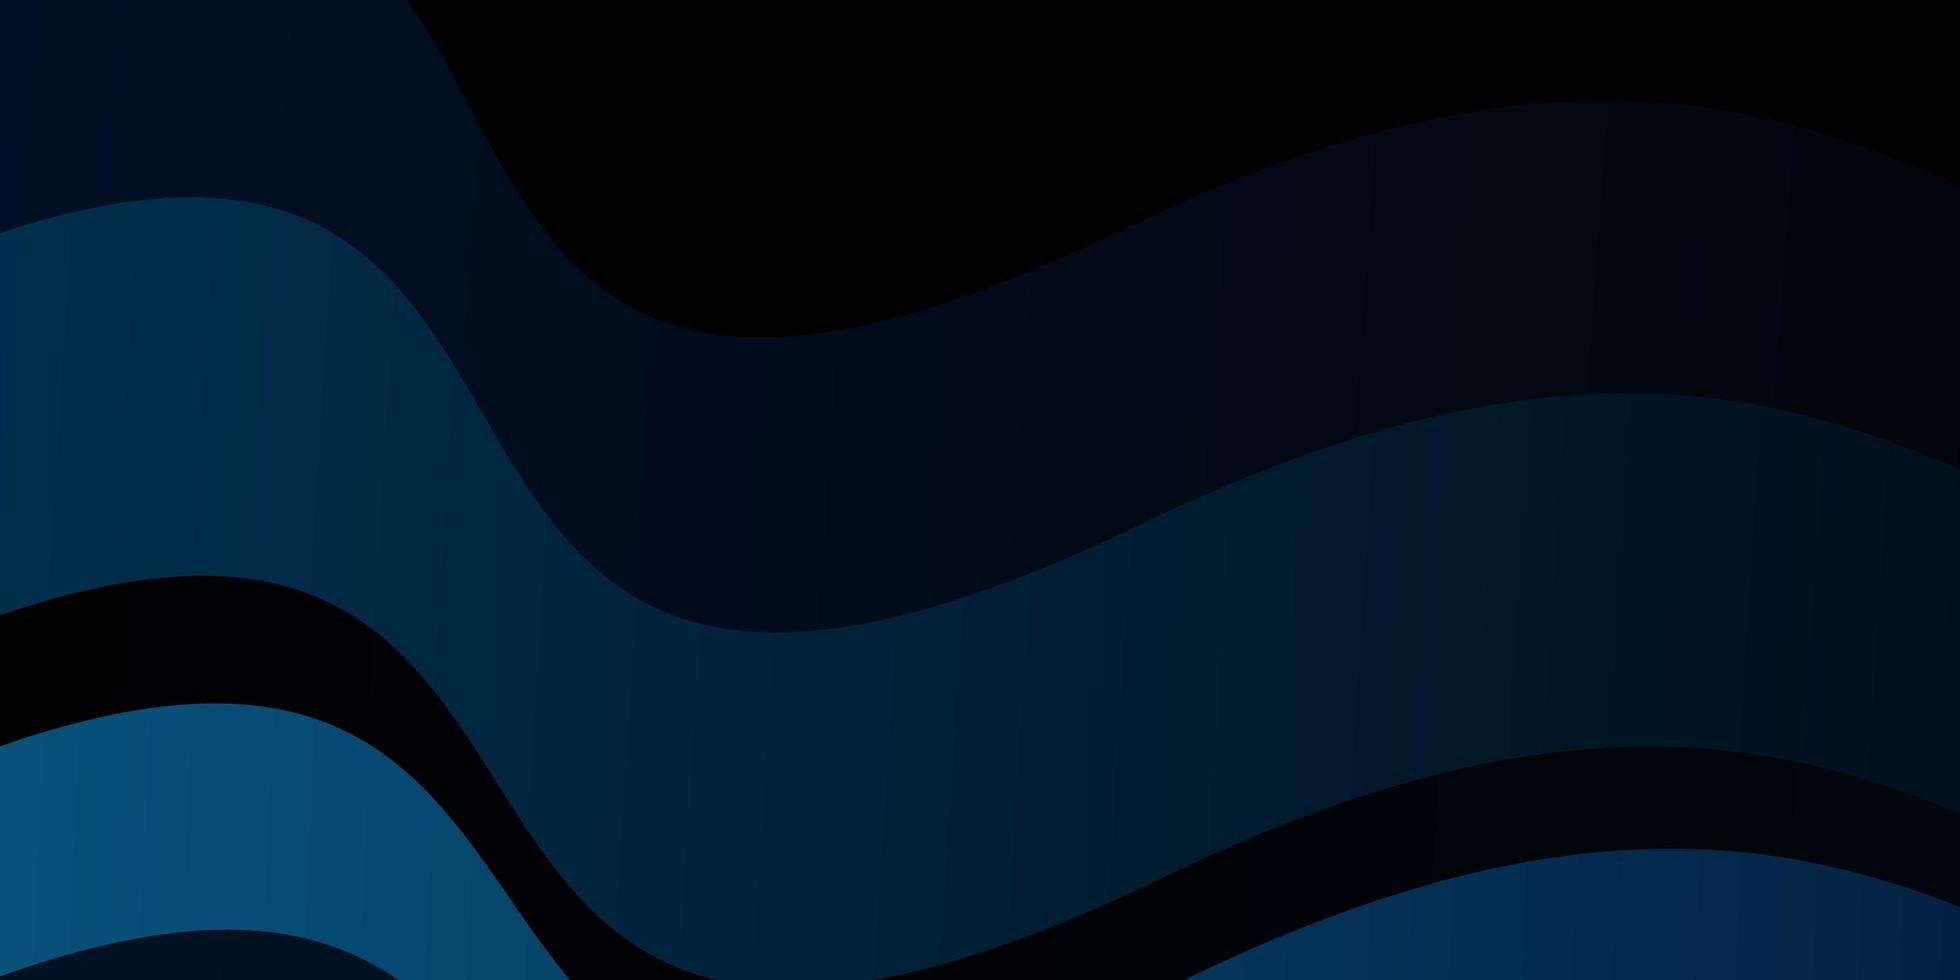 layout vetorial azul escuro com arco circular vetor